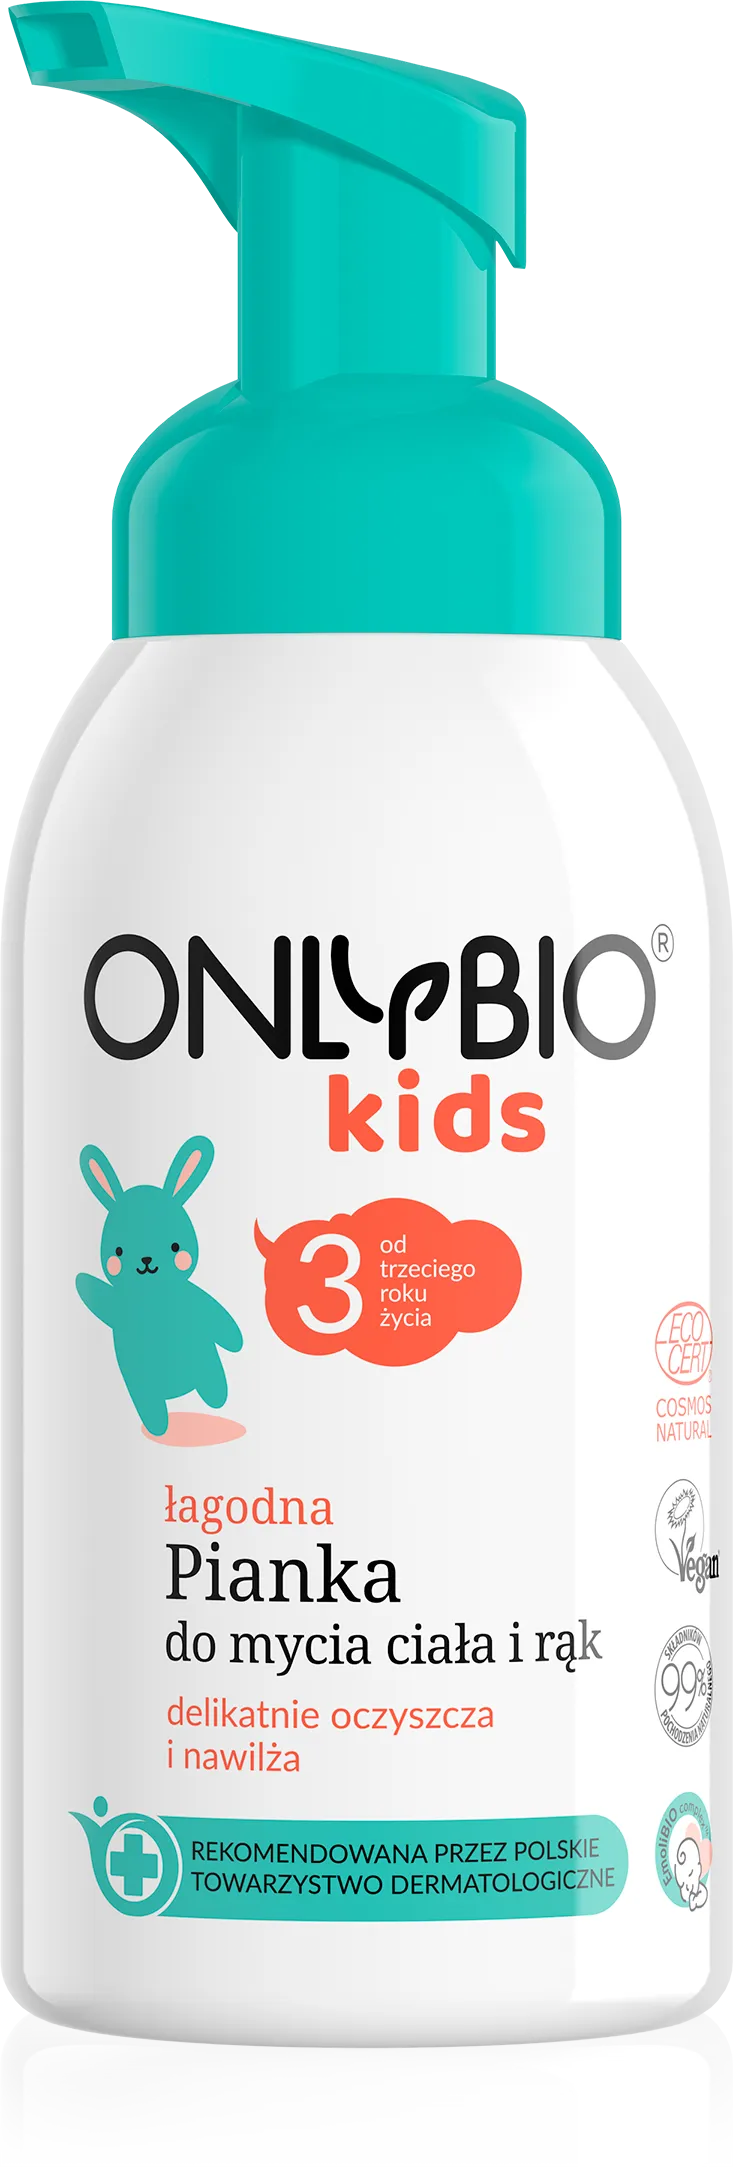 OnlyBio Kids łagodna pianka do mycia ciała i rąk od 3. roku życia, 300 ml